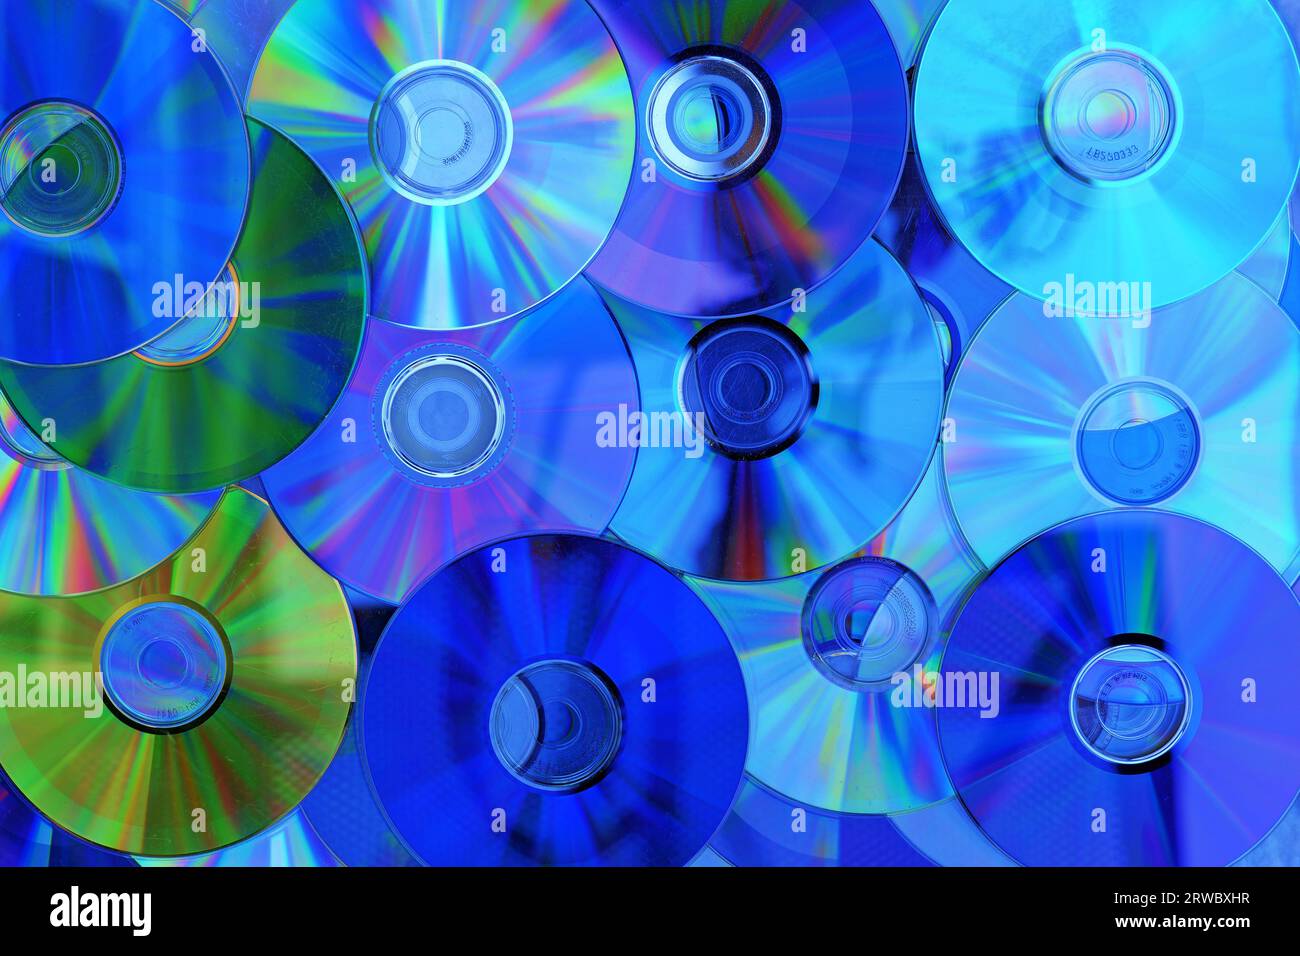 Le disque compact (CD) est un support de stockage numérique pour la musique. La photo peut être utilisée comme textures ou arrière-plans. Banque D'Images